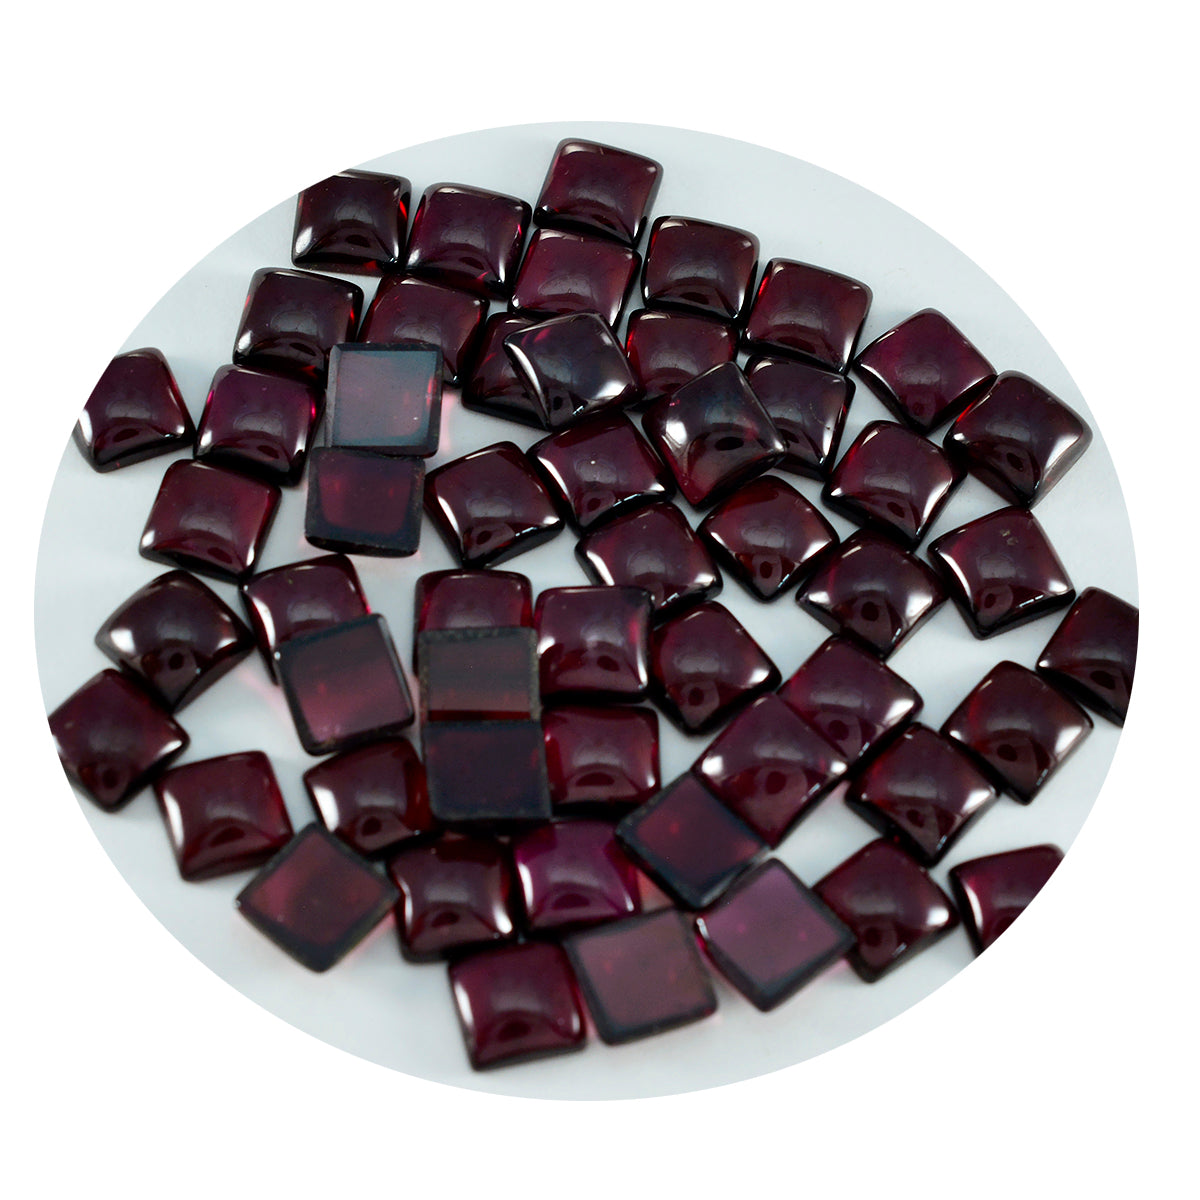 Riyogems 1 Stück roter Granat-Cabochon, 6 x 6 mm, quadratische Form, schön aussehende, hochwertige lose Edelsteine